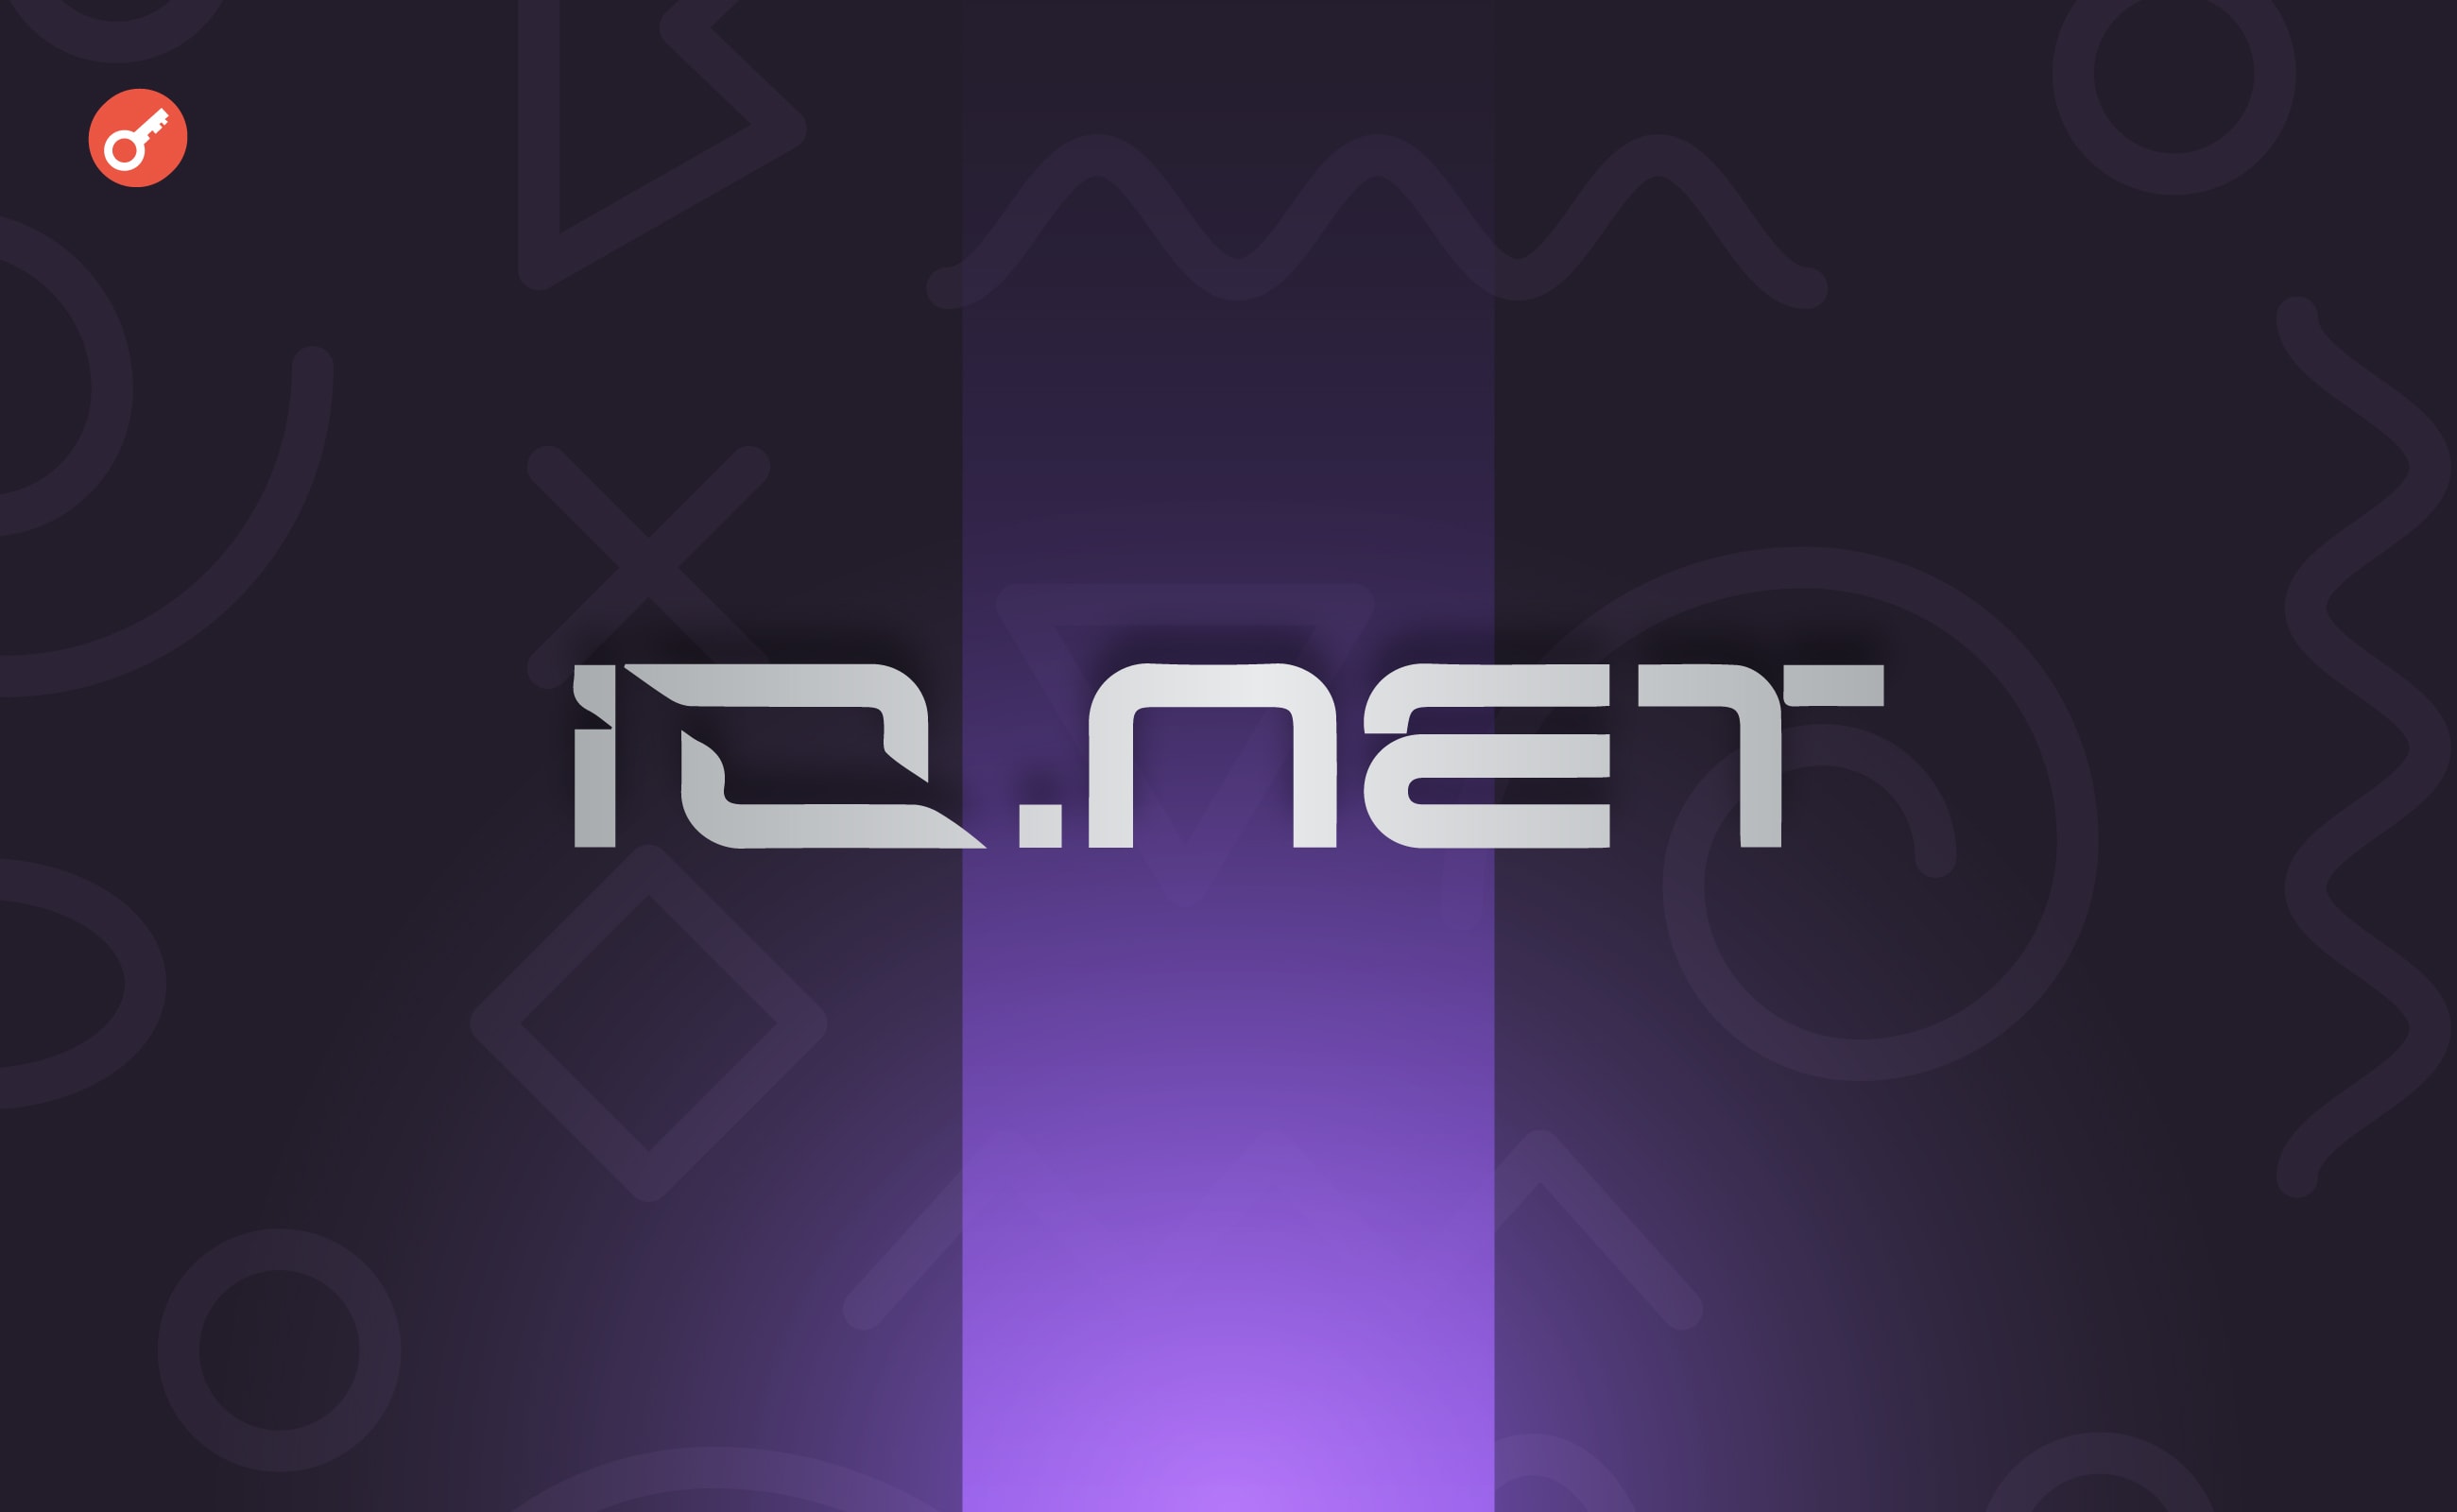 Io.Net — беремо участь у кампанії на Galxe. Головний колаж статті.